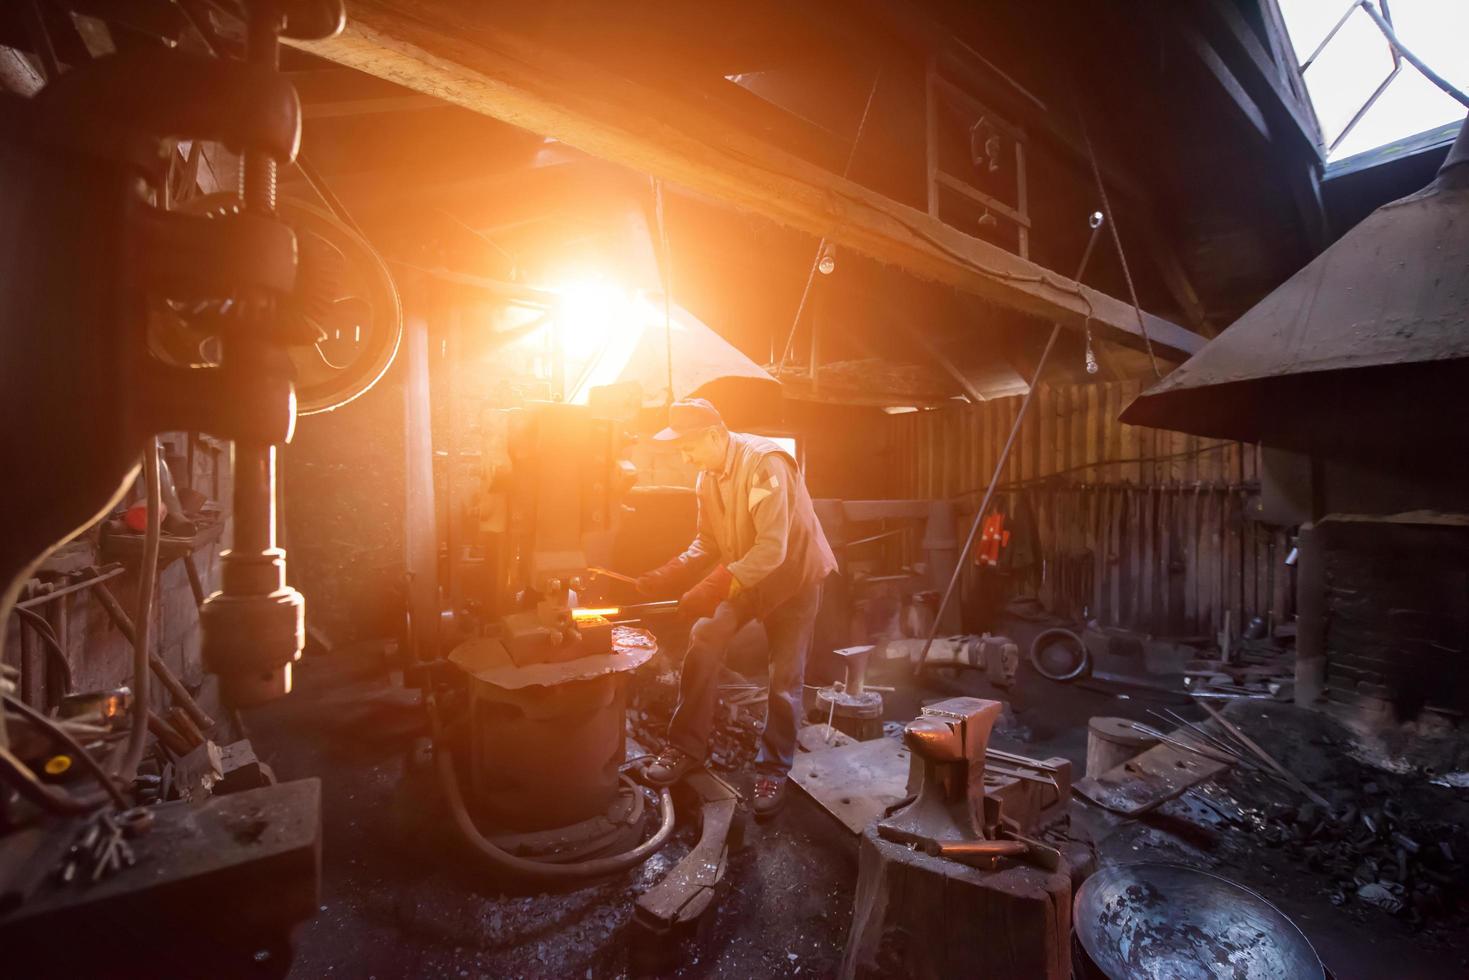 herrero forja manualmente el metal fundido con la luz del sol a través de las ventanas foto